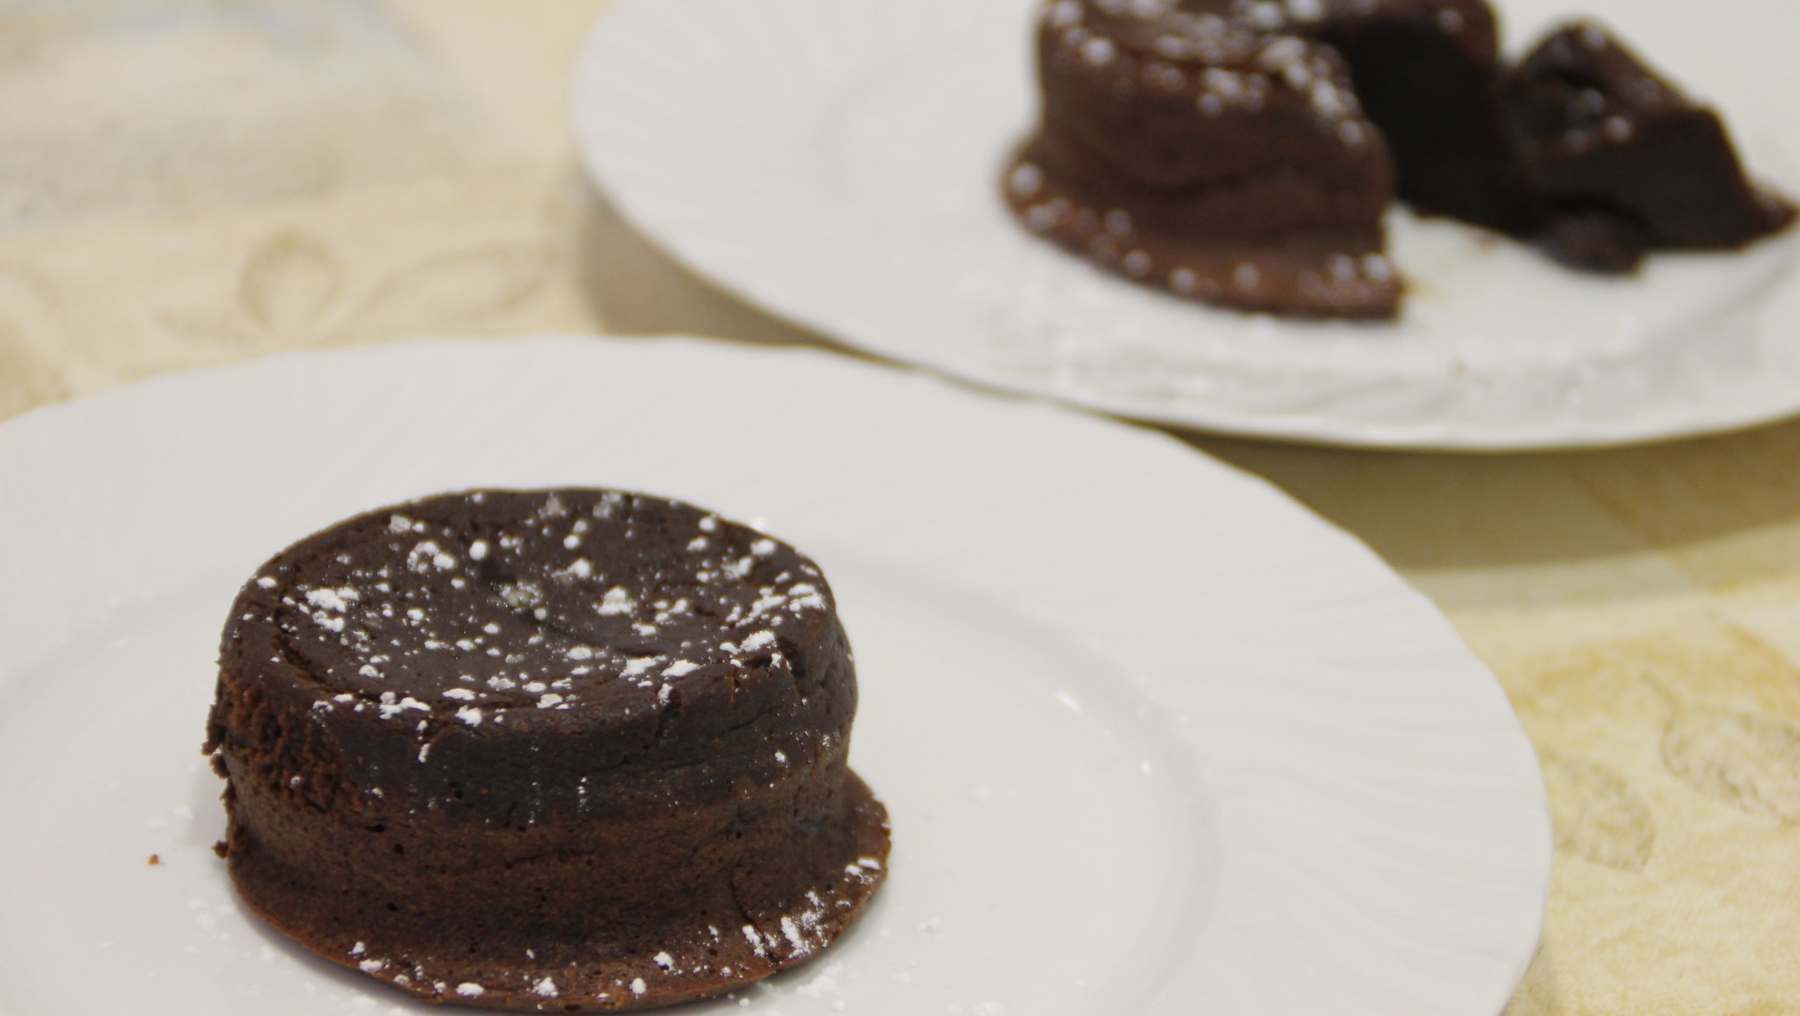 Coulant de chocolate negro con salsa toffee: una receta espectacular 4